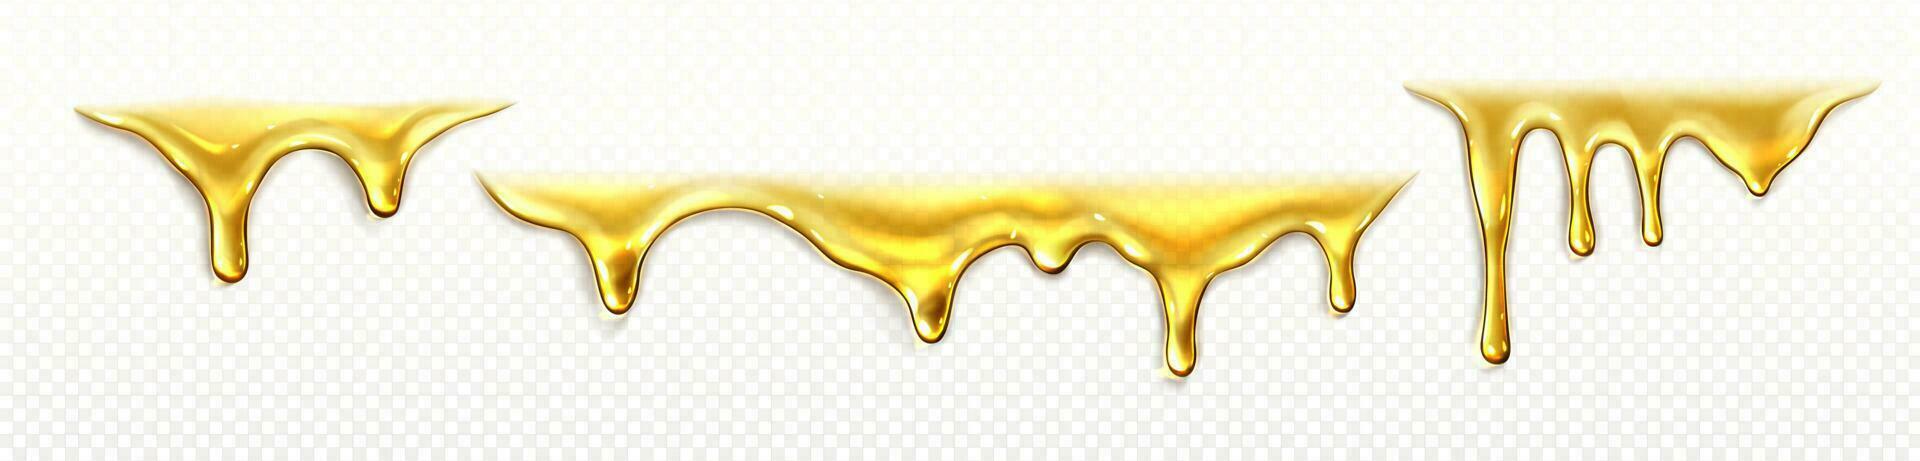 Flüssigkeit Öl tropfen Vektor fallen Fluss, Schmelze Honig Sirup